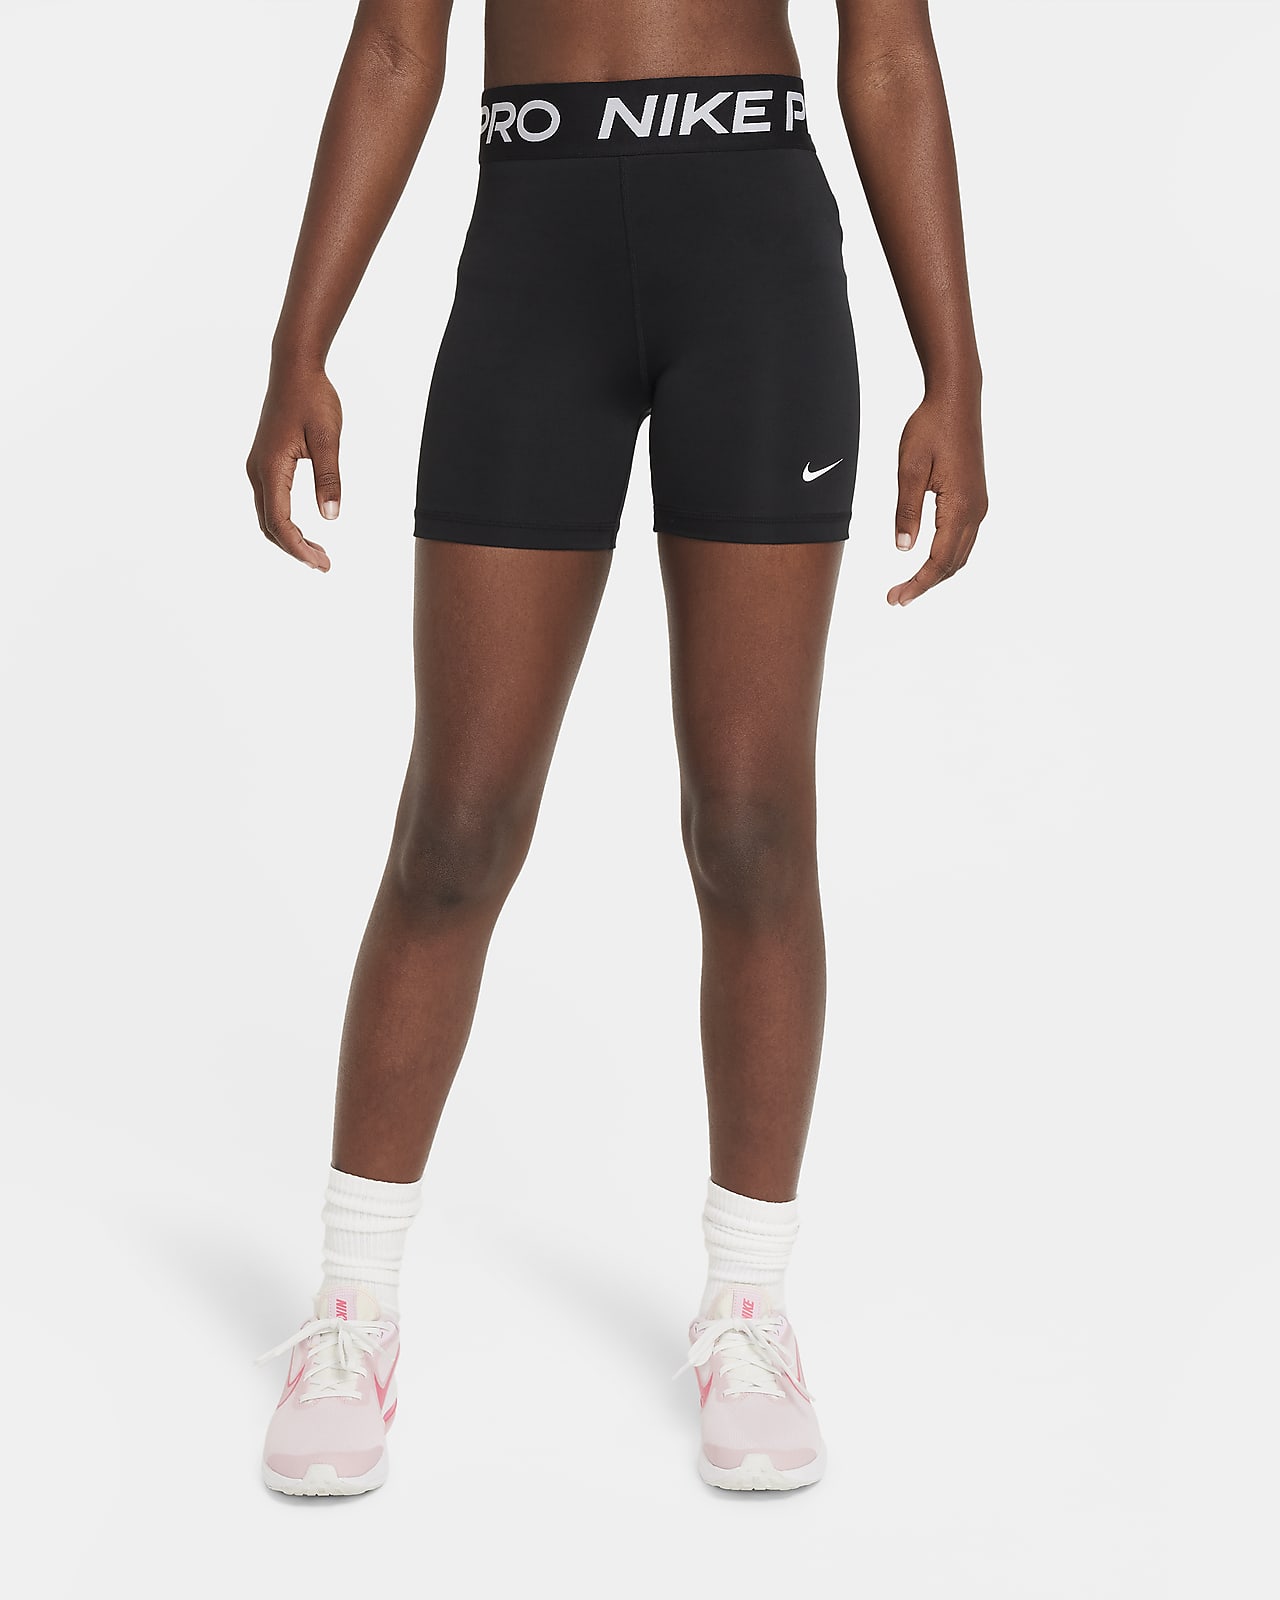 Nike Pro Shorts.